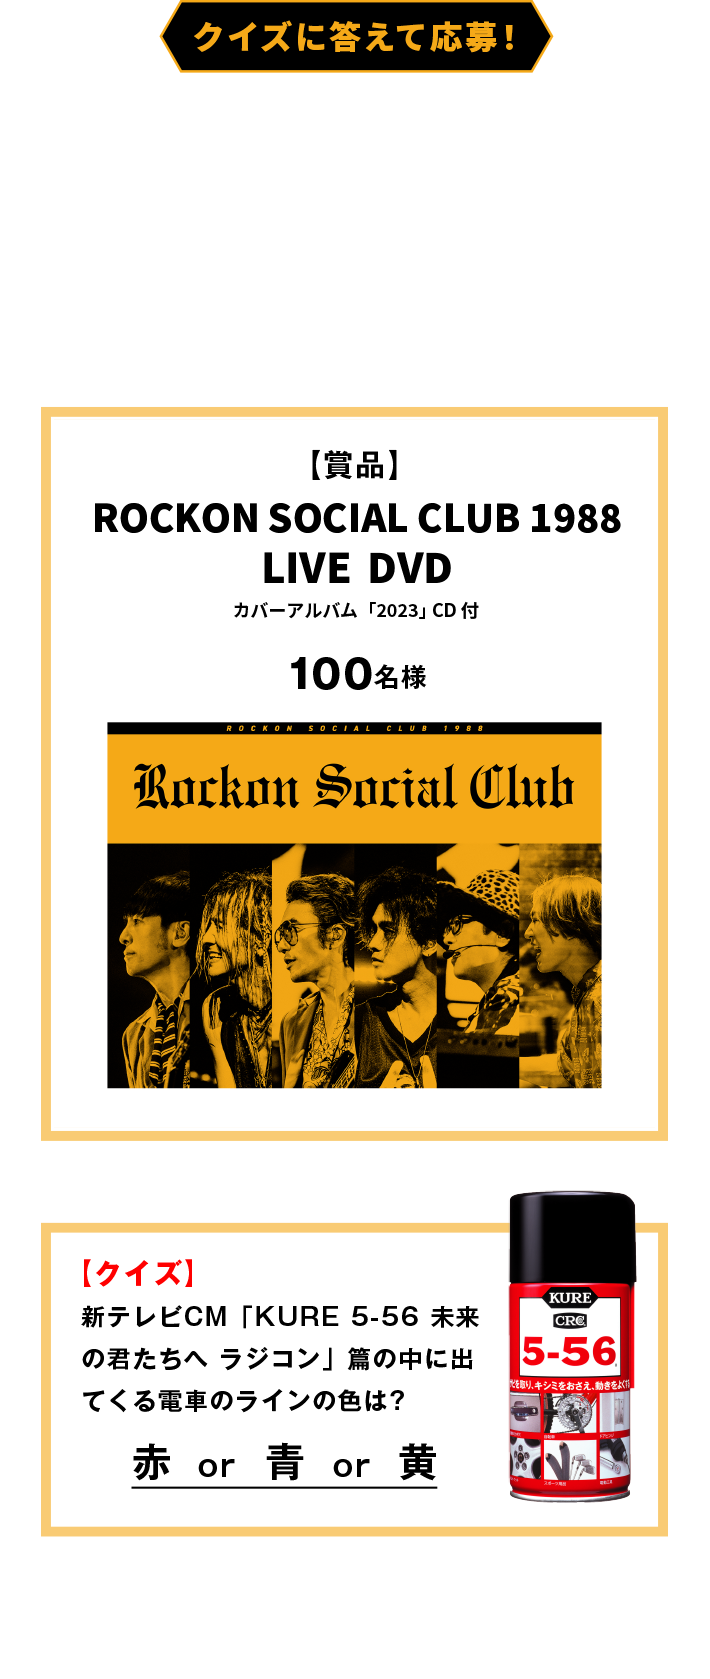 Rockon Social Club Rolling Thunder Baby | www.carmenundmelanie.at